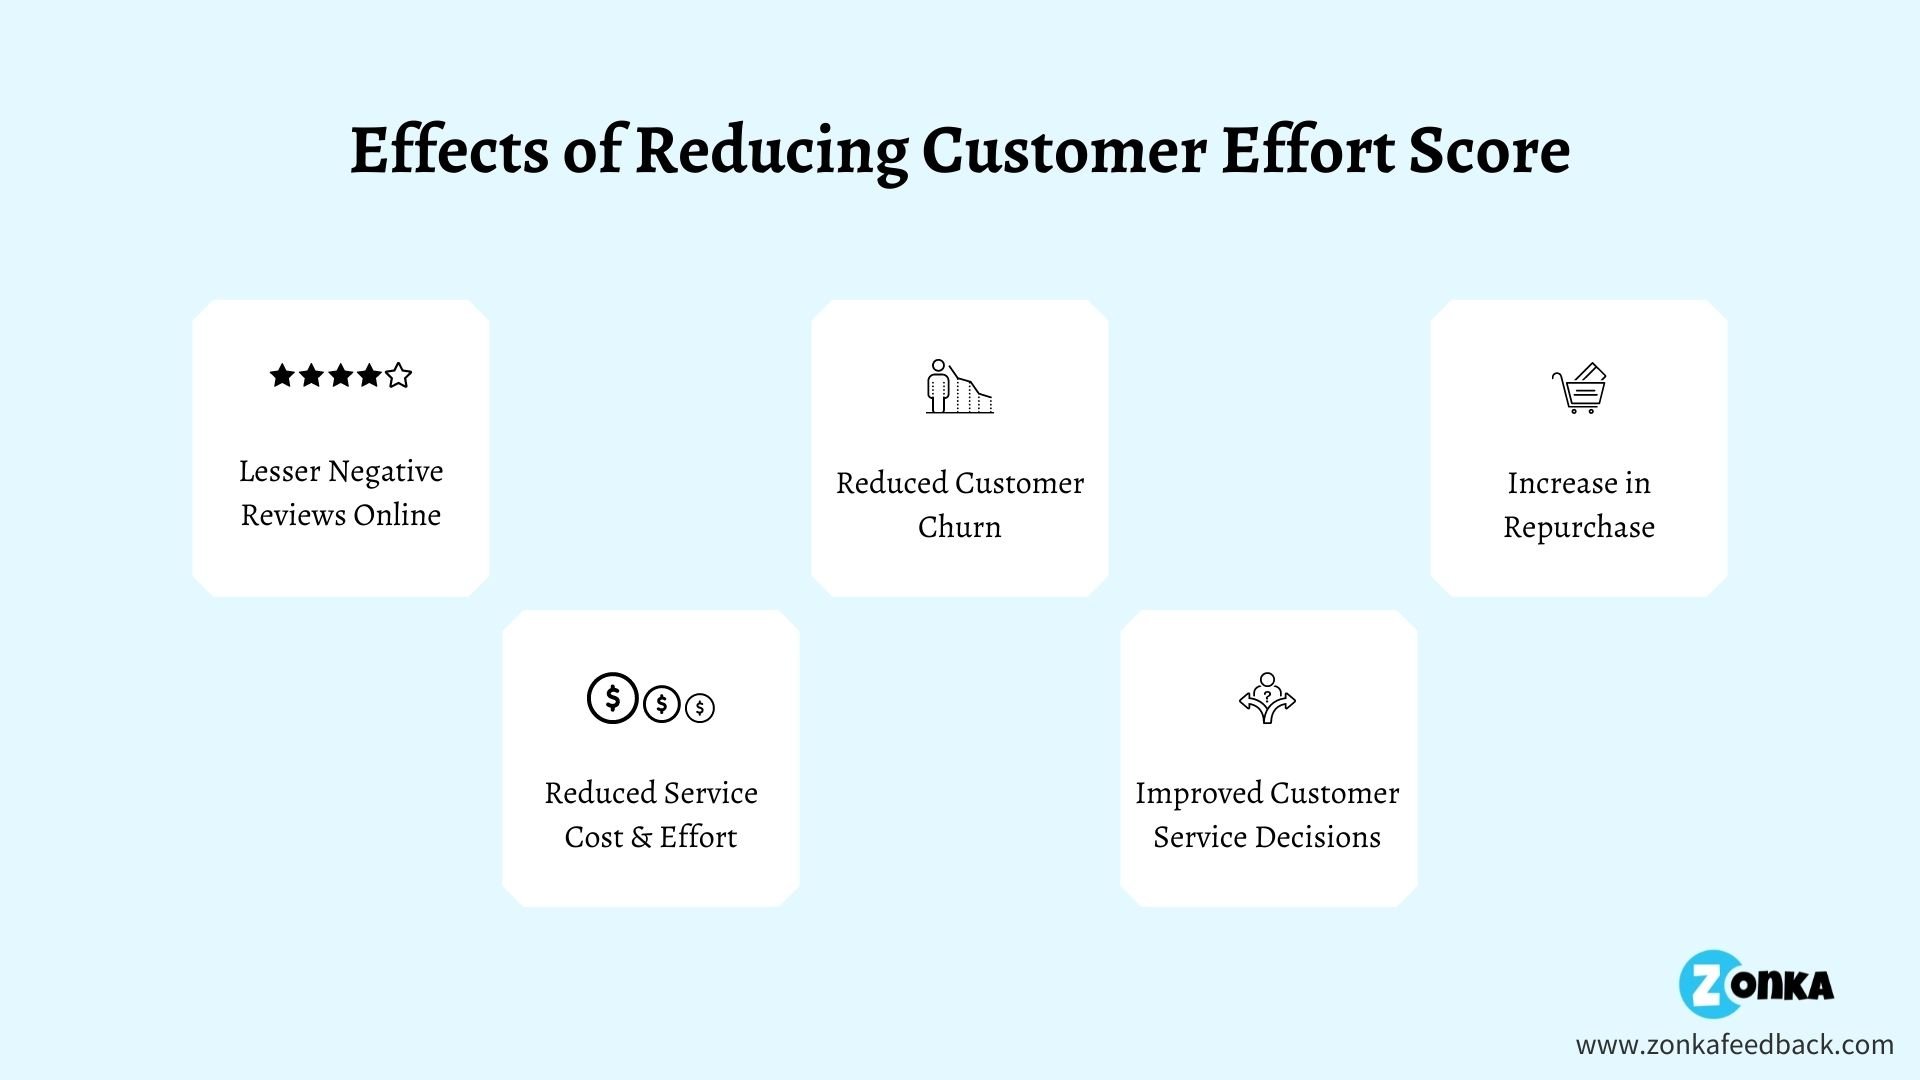 Benefits of Reducing Customer Effort Score